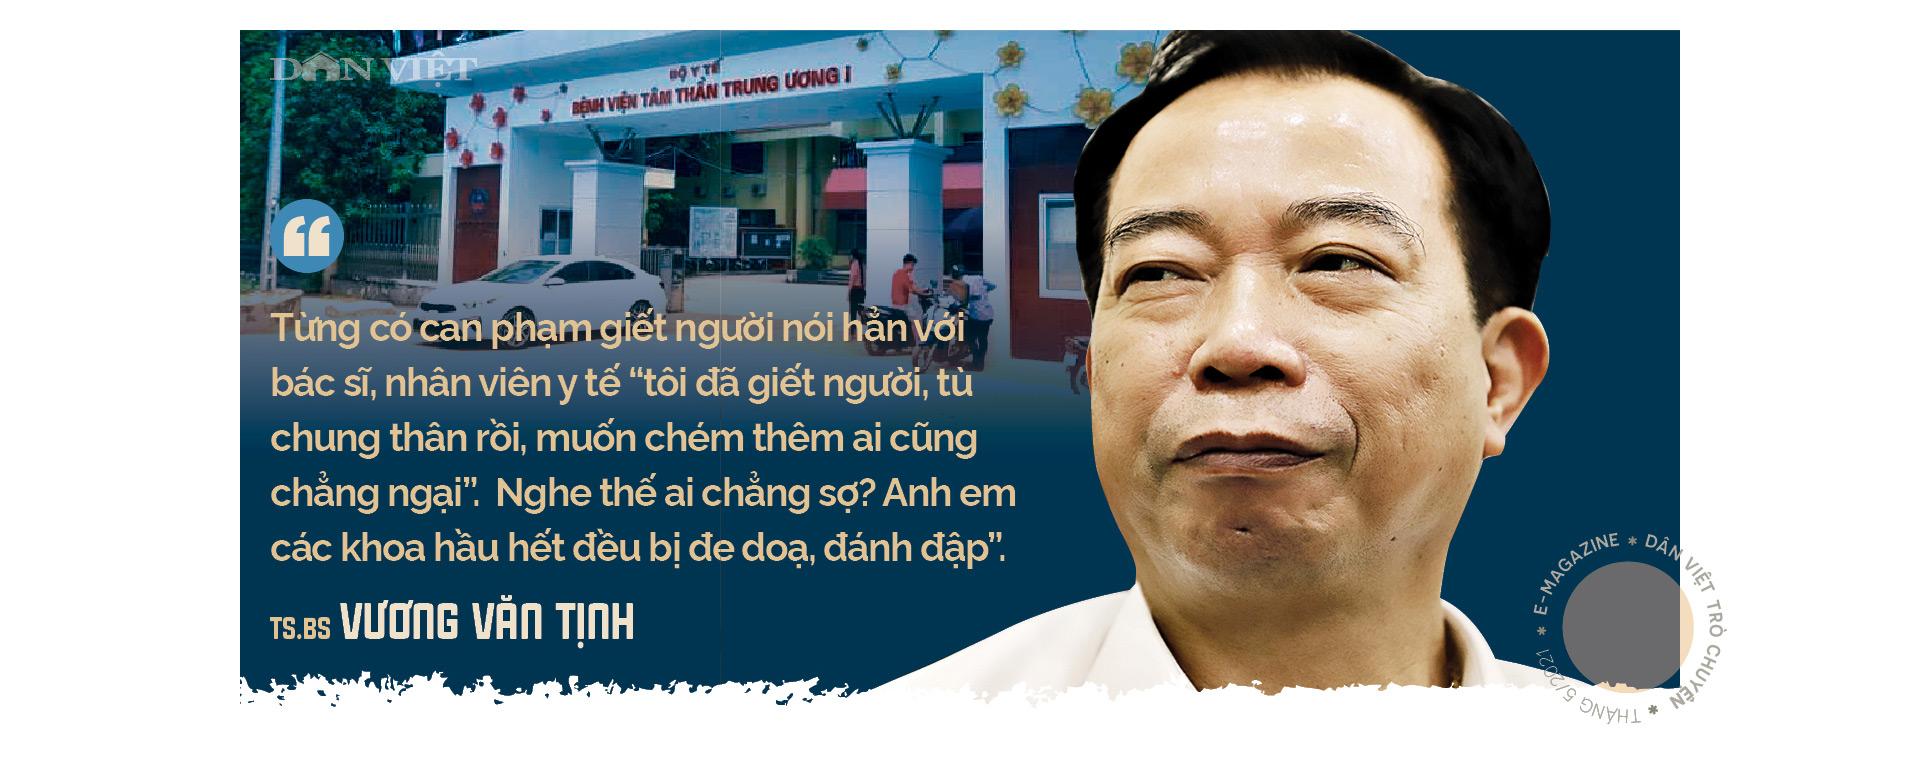 Tiến sĩ - Bác sĩ Vương Văn Tịnh, nguyên Giám đốc Bệnh viện tâm thần T.Ư 1:&quot;Tôi không đáng bị cách chức&quot;  - Ảnh 12.